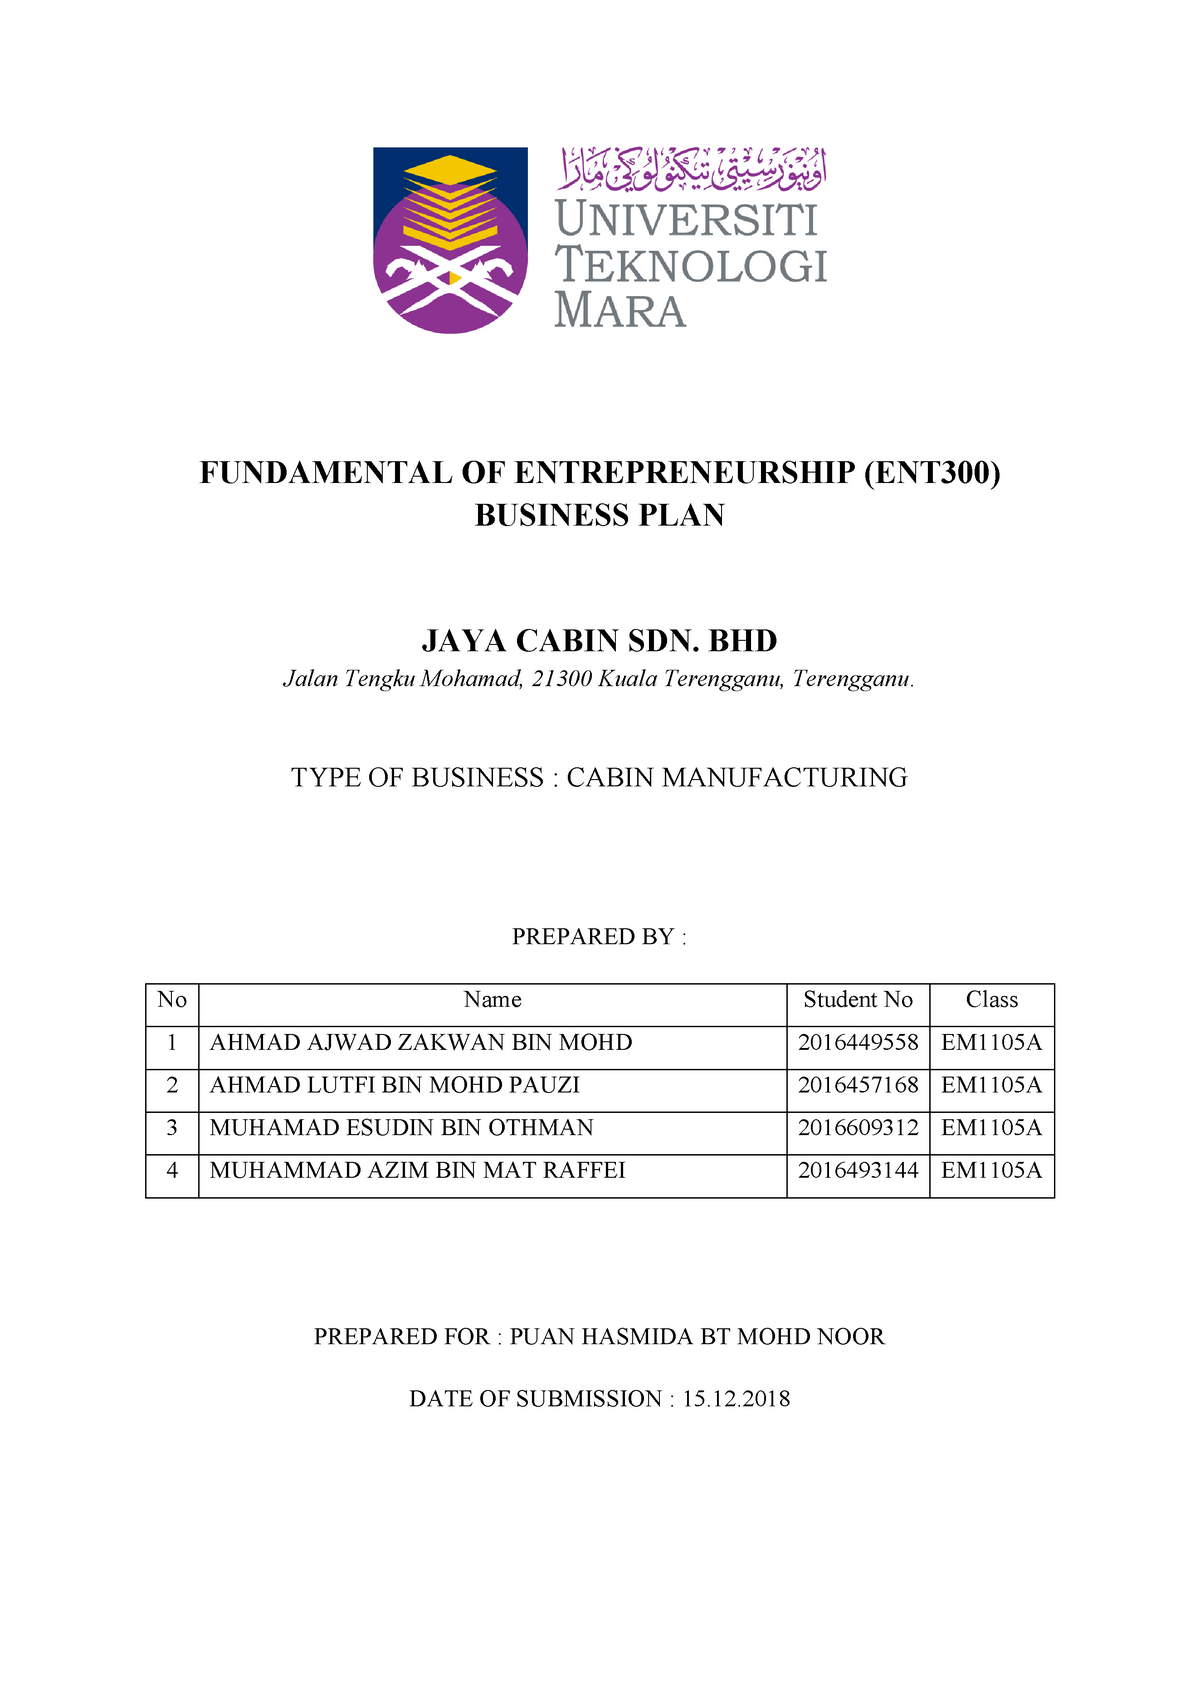 Business Plan Complete Studocu